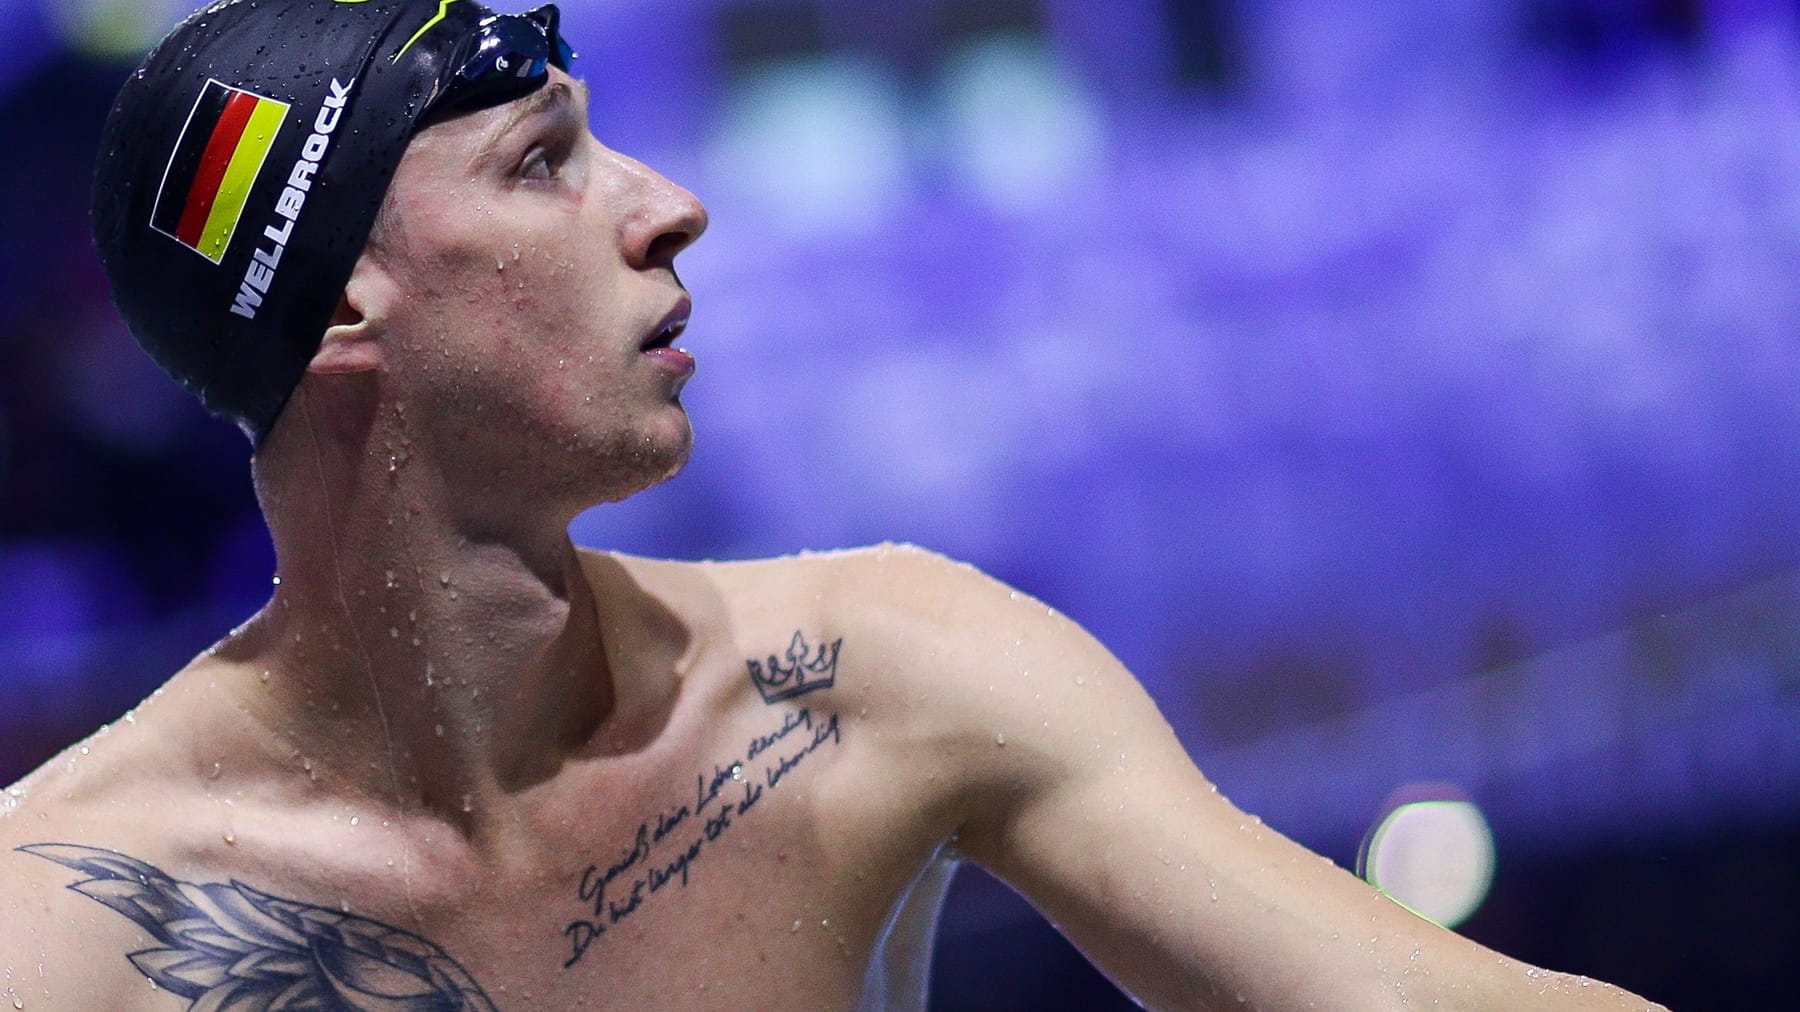 Bintang renang Florian Wellbrock harus belajar berenang lagi